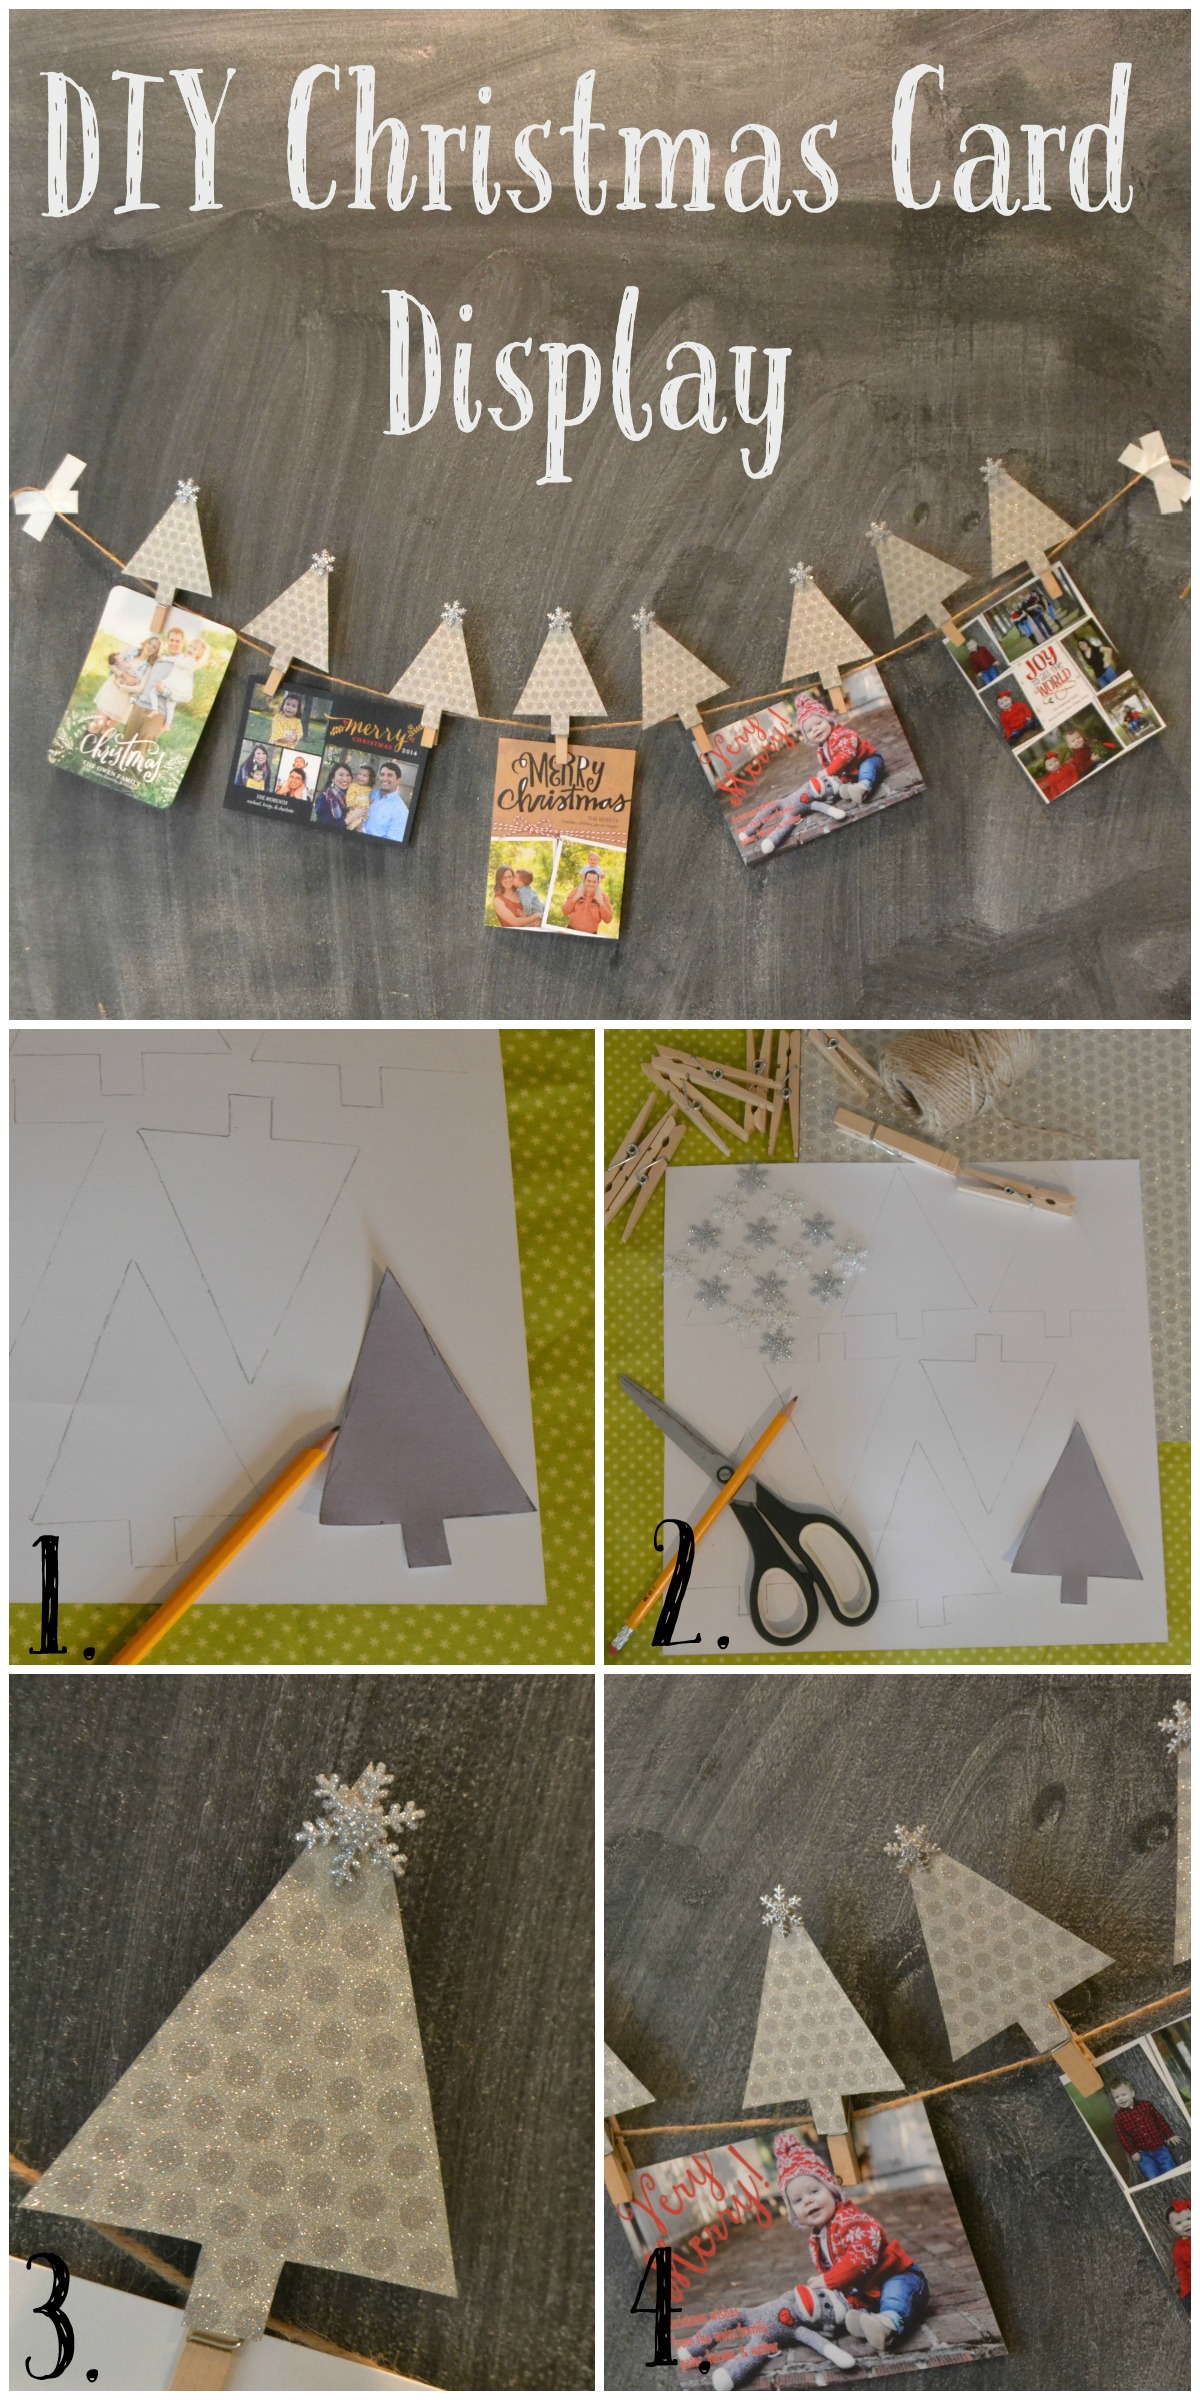 DIY Christmas Card Display and Holder Steps